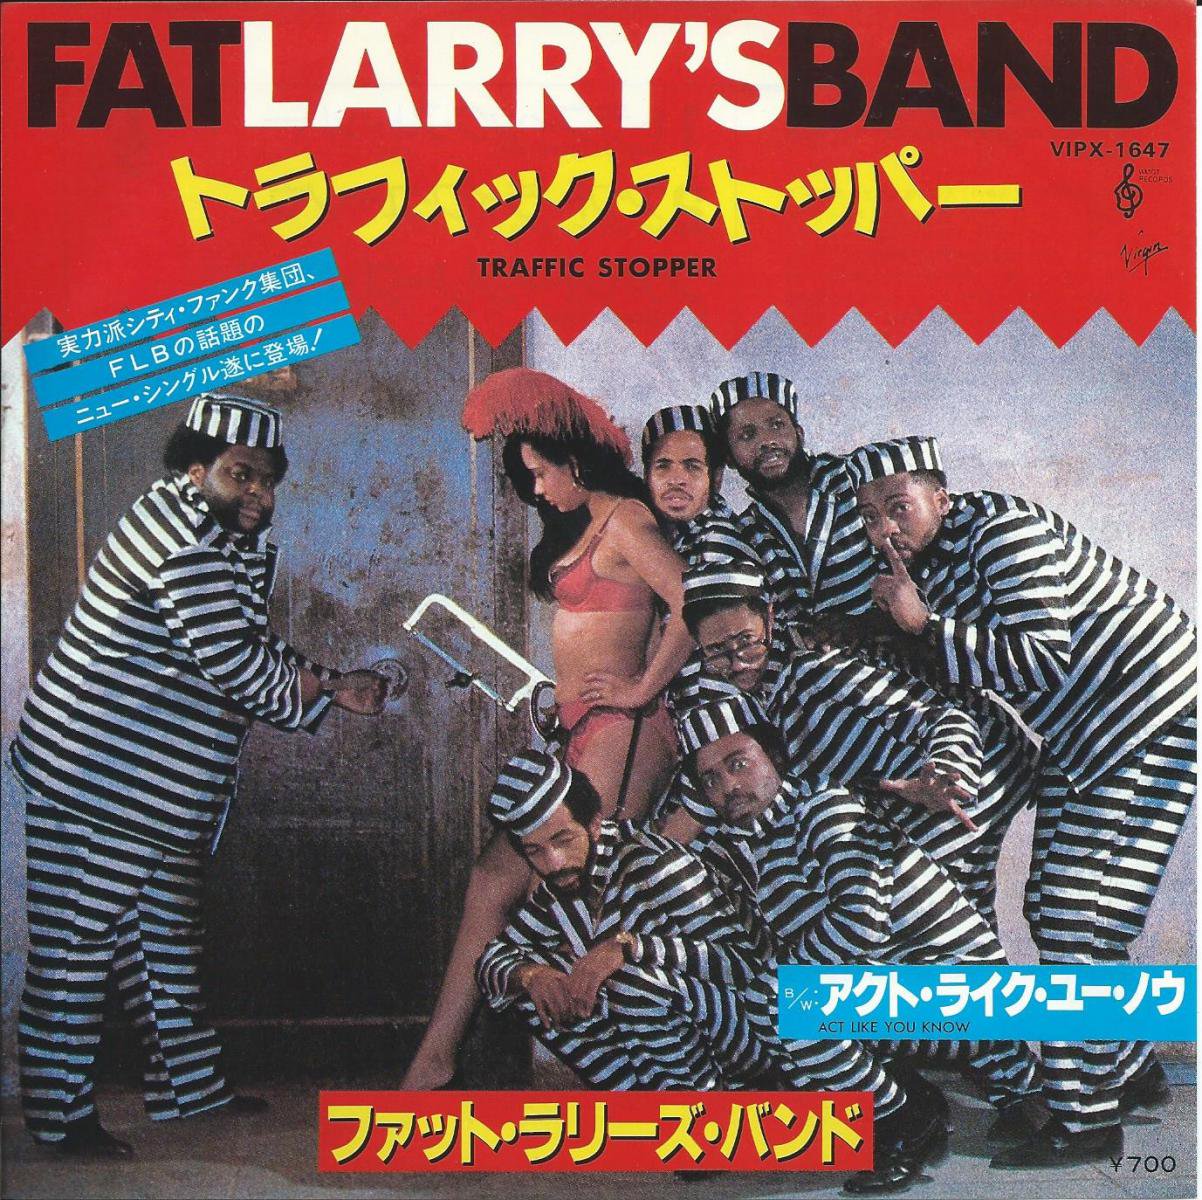 ファット・ラリーズ・バンド FAT LARRY'S BAND / アクト・ライク・ユー・ノウ ACT LIKE YOU KNOW  (7